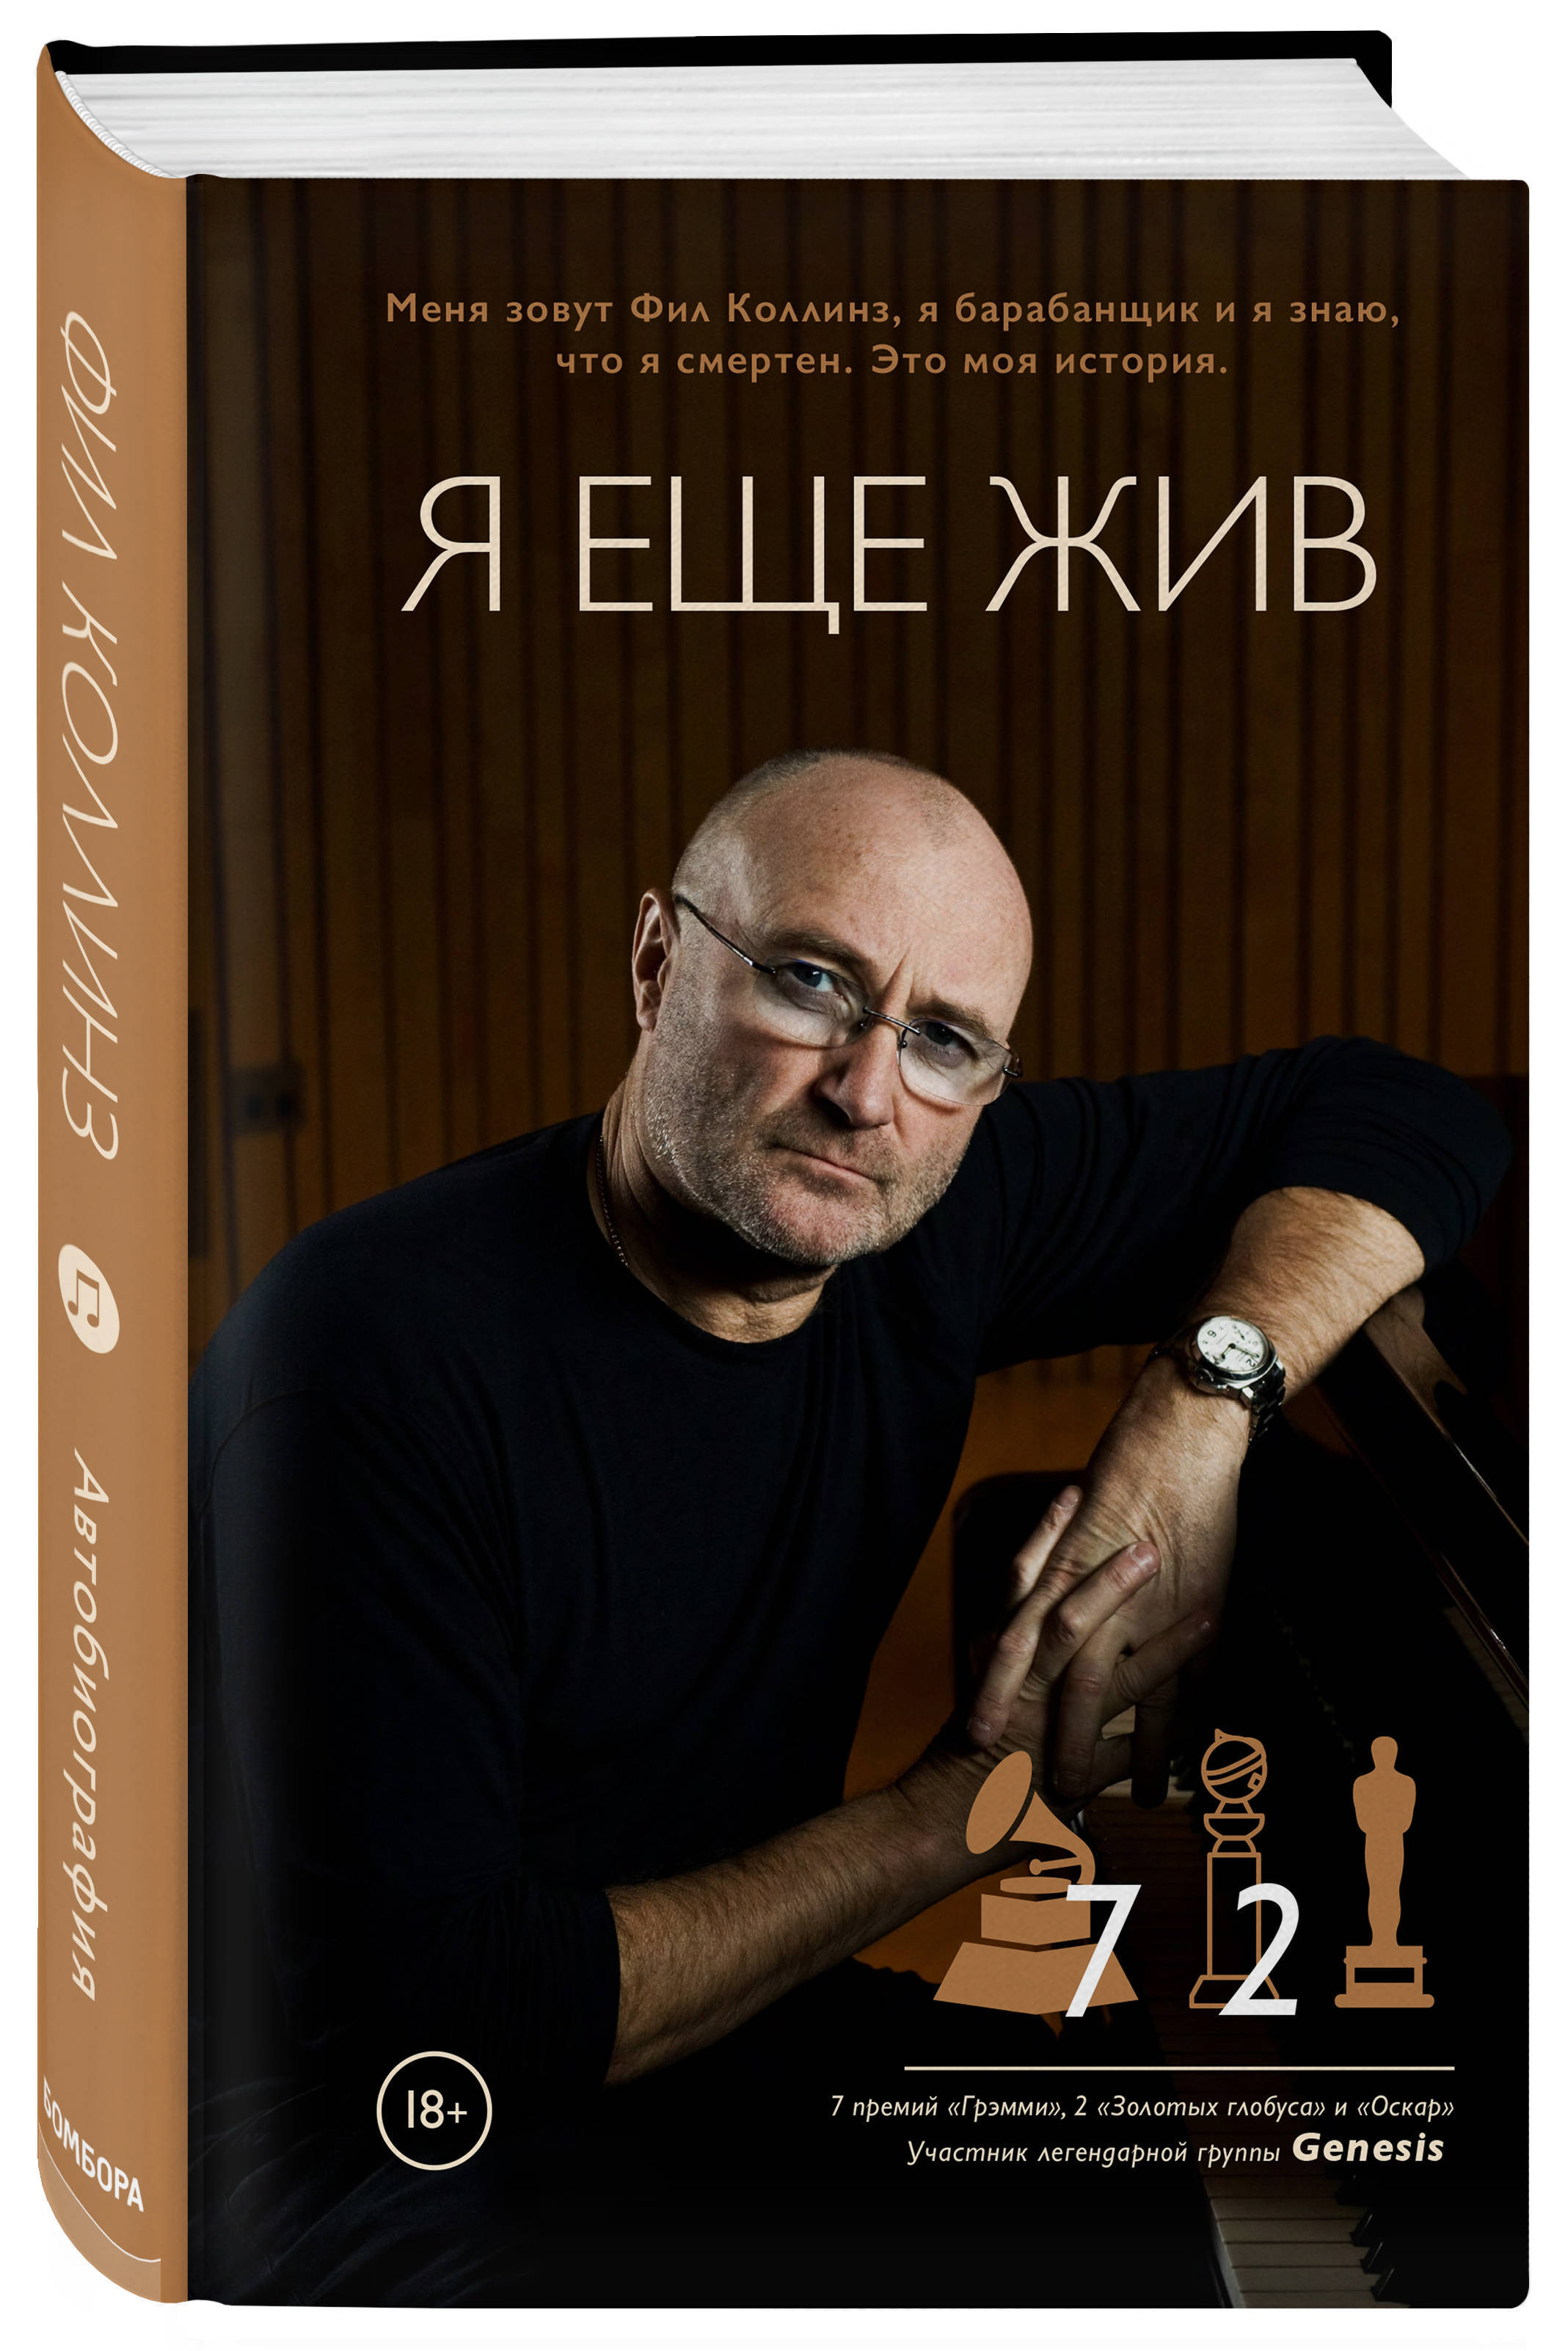 Фил коллинз альбомы. Phil Collins обложки альбомов. Phil Collins обложка. Фил Коллинз книга. Фил Коллинз здоровье 2021.